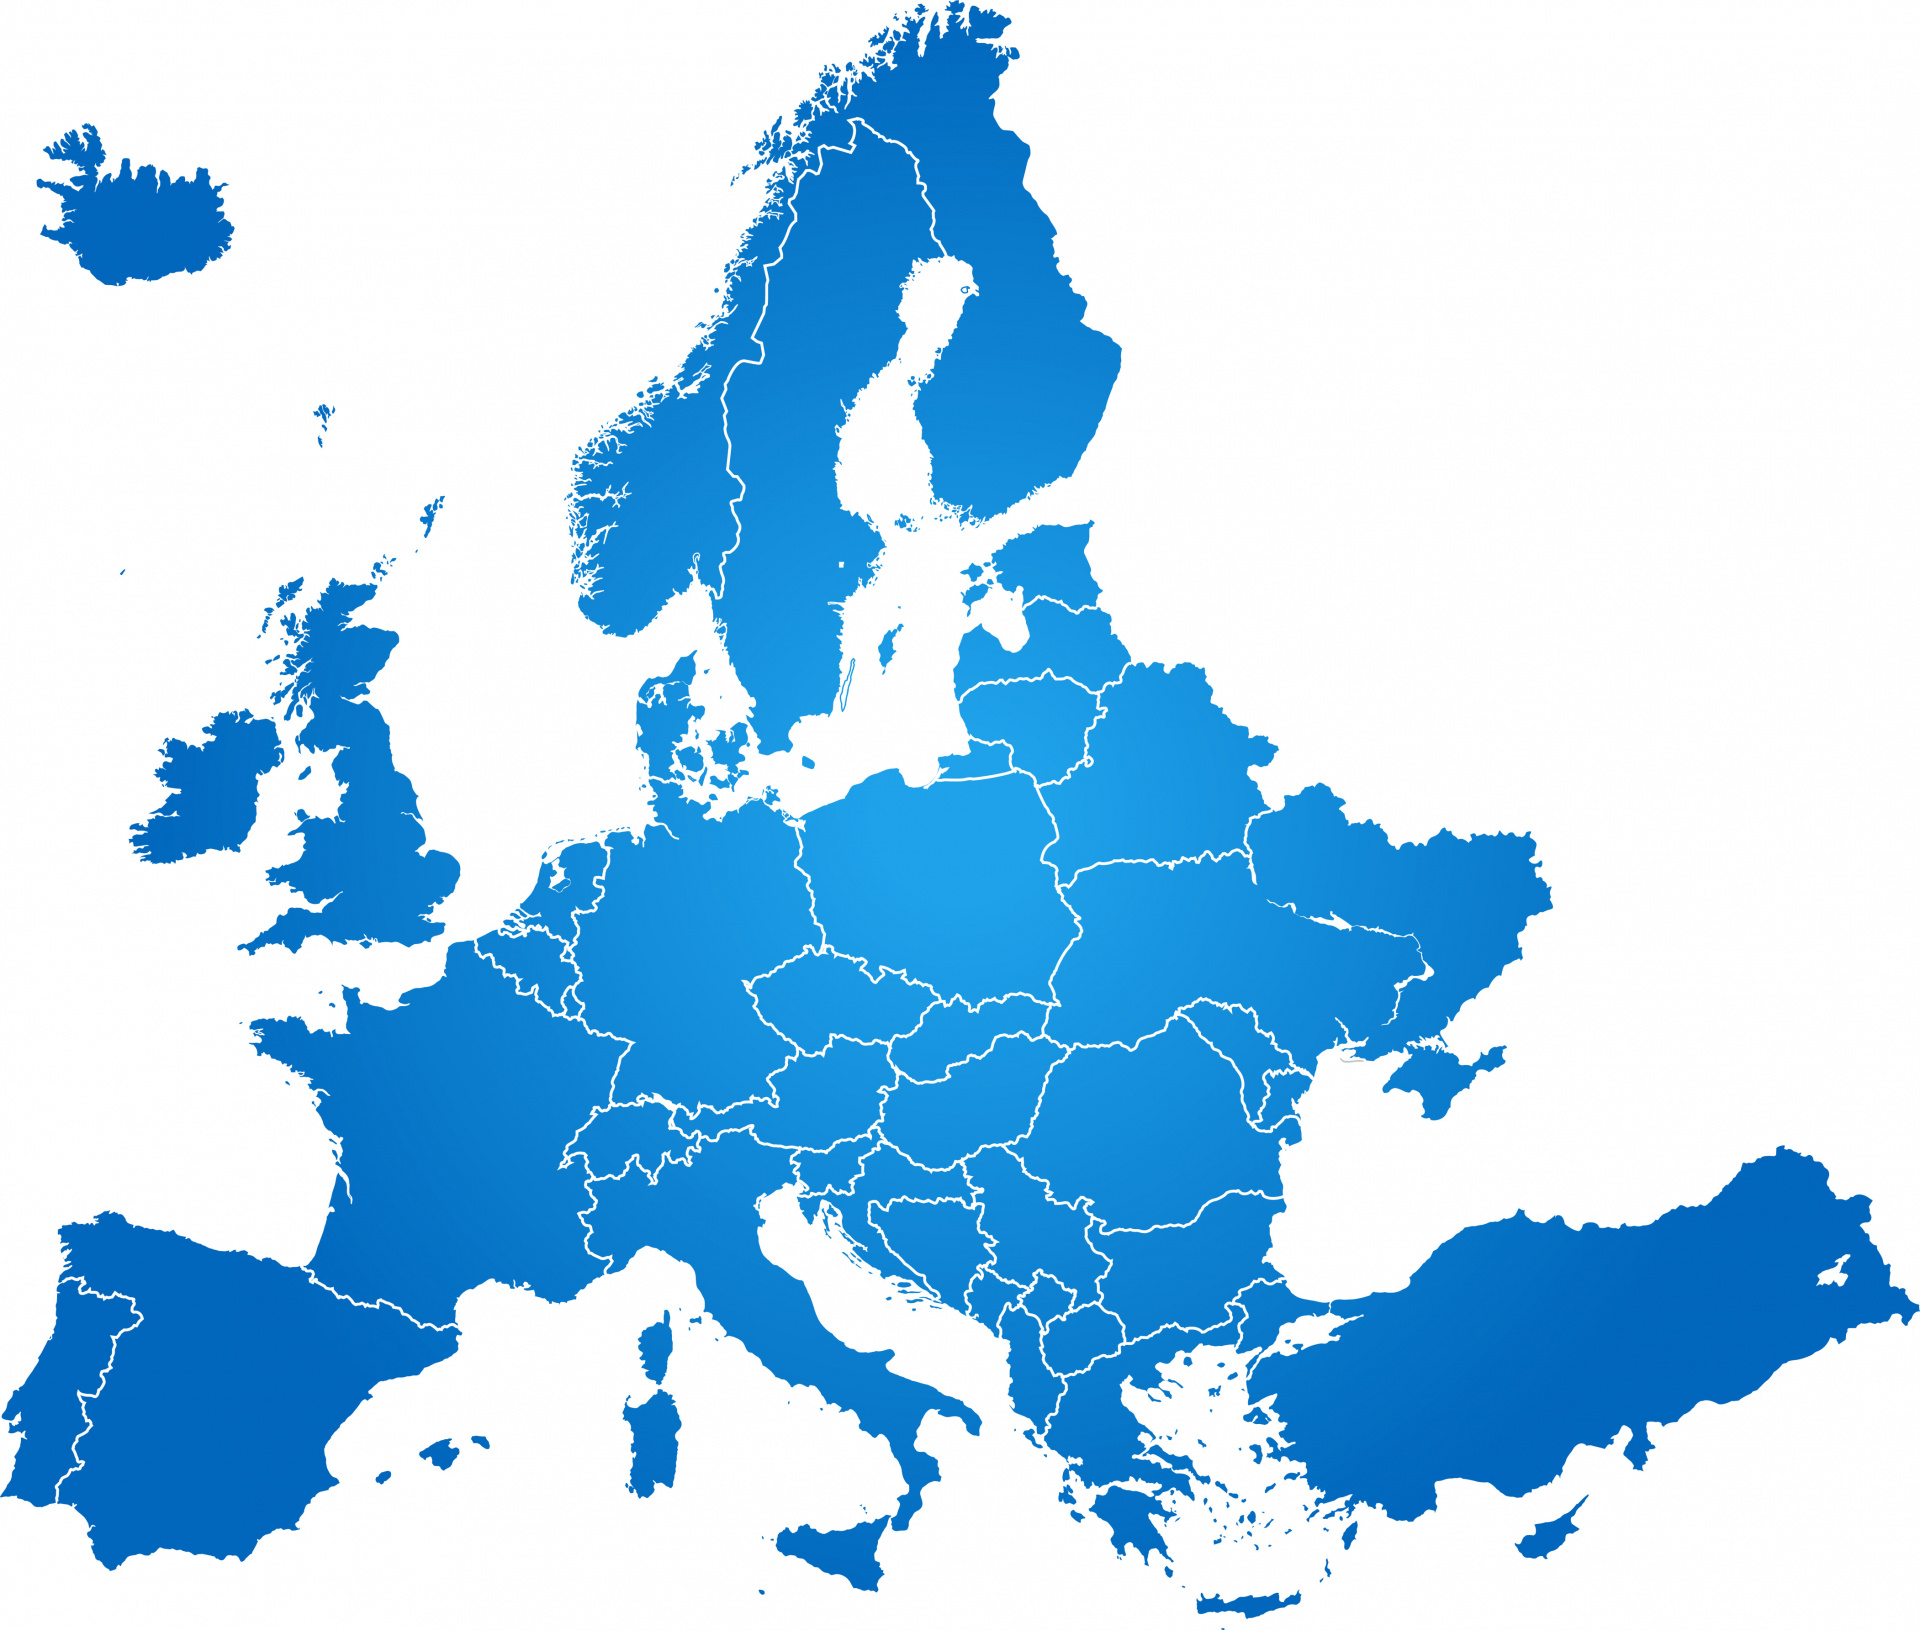 Eine Karte auf der alle europäischen Länder eingezeichnet sind. 
© boreala - stock.adobe.com